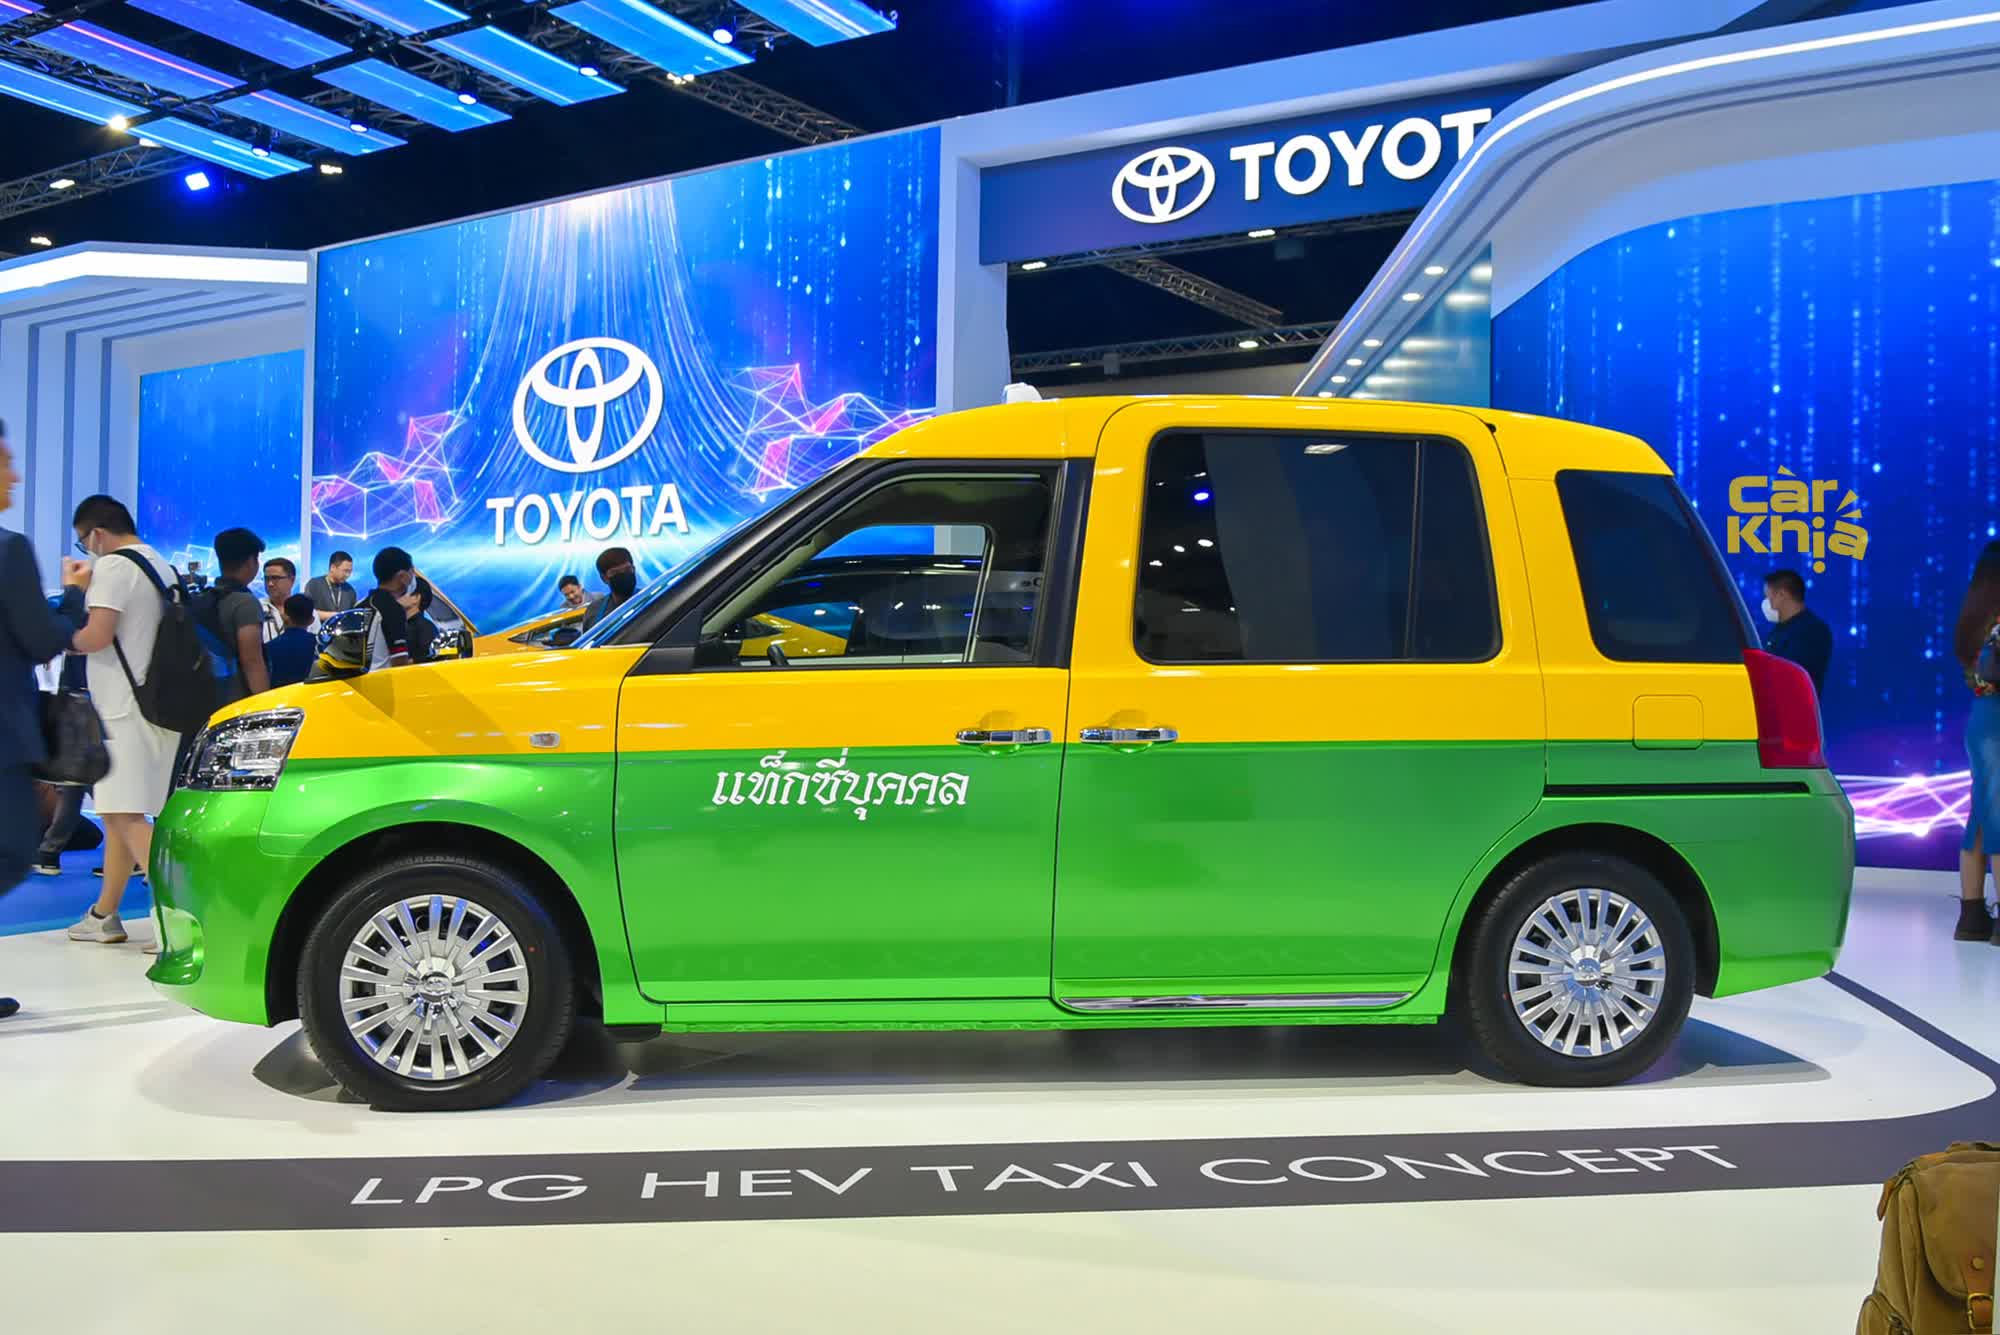 Đây mới là chiếc Toyota taxi thực dụng đến kinh dị, công nghệ an toàn như Camry nhưng không có nổi màn hình giải trí - Ảnh 4.